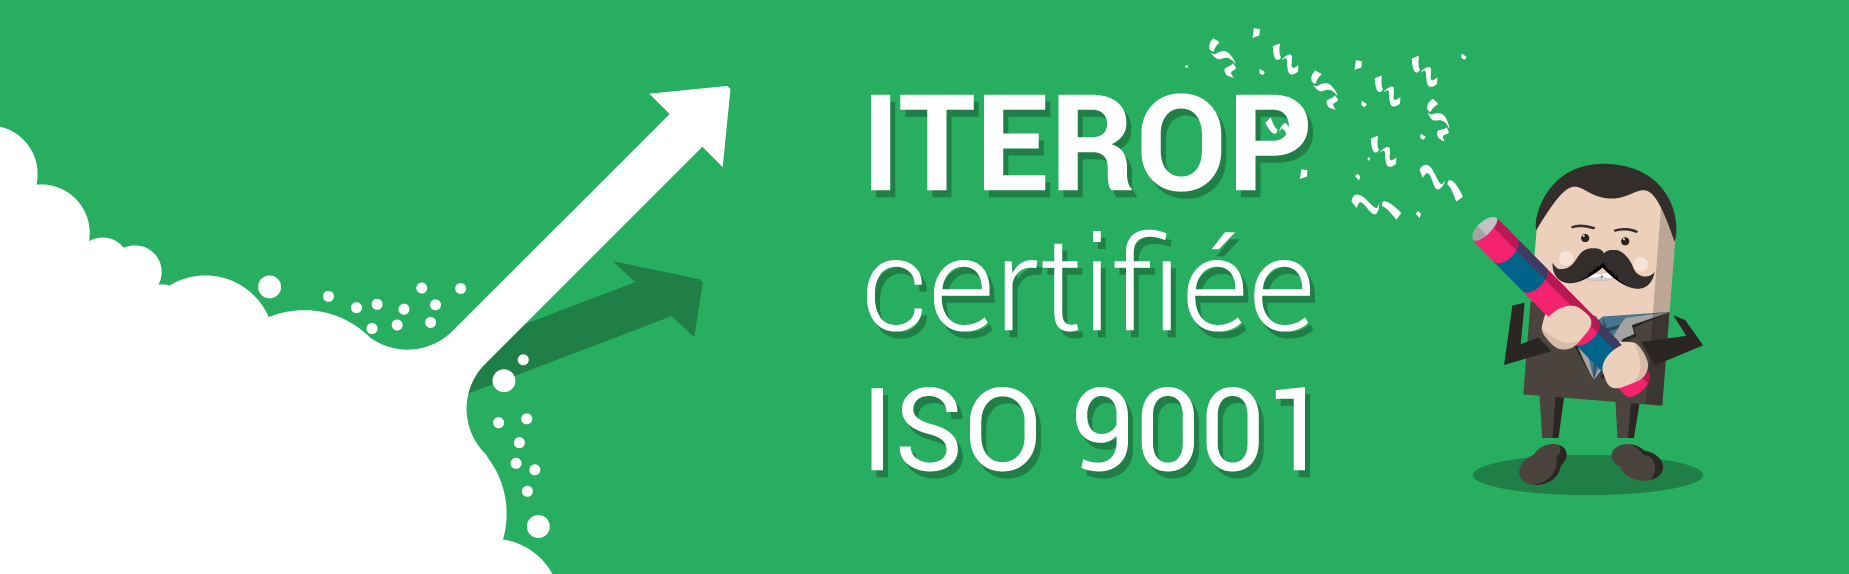 Iterop certifiée ISO 9001:2015 !